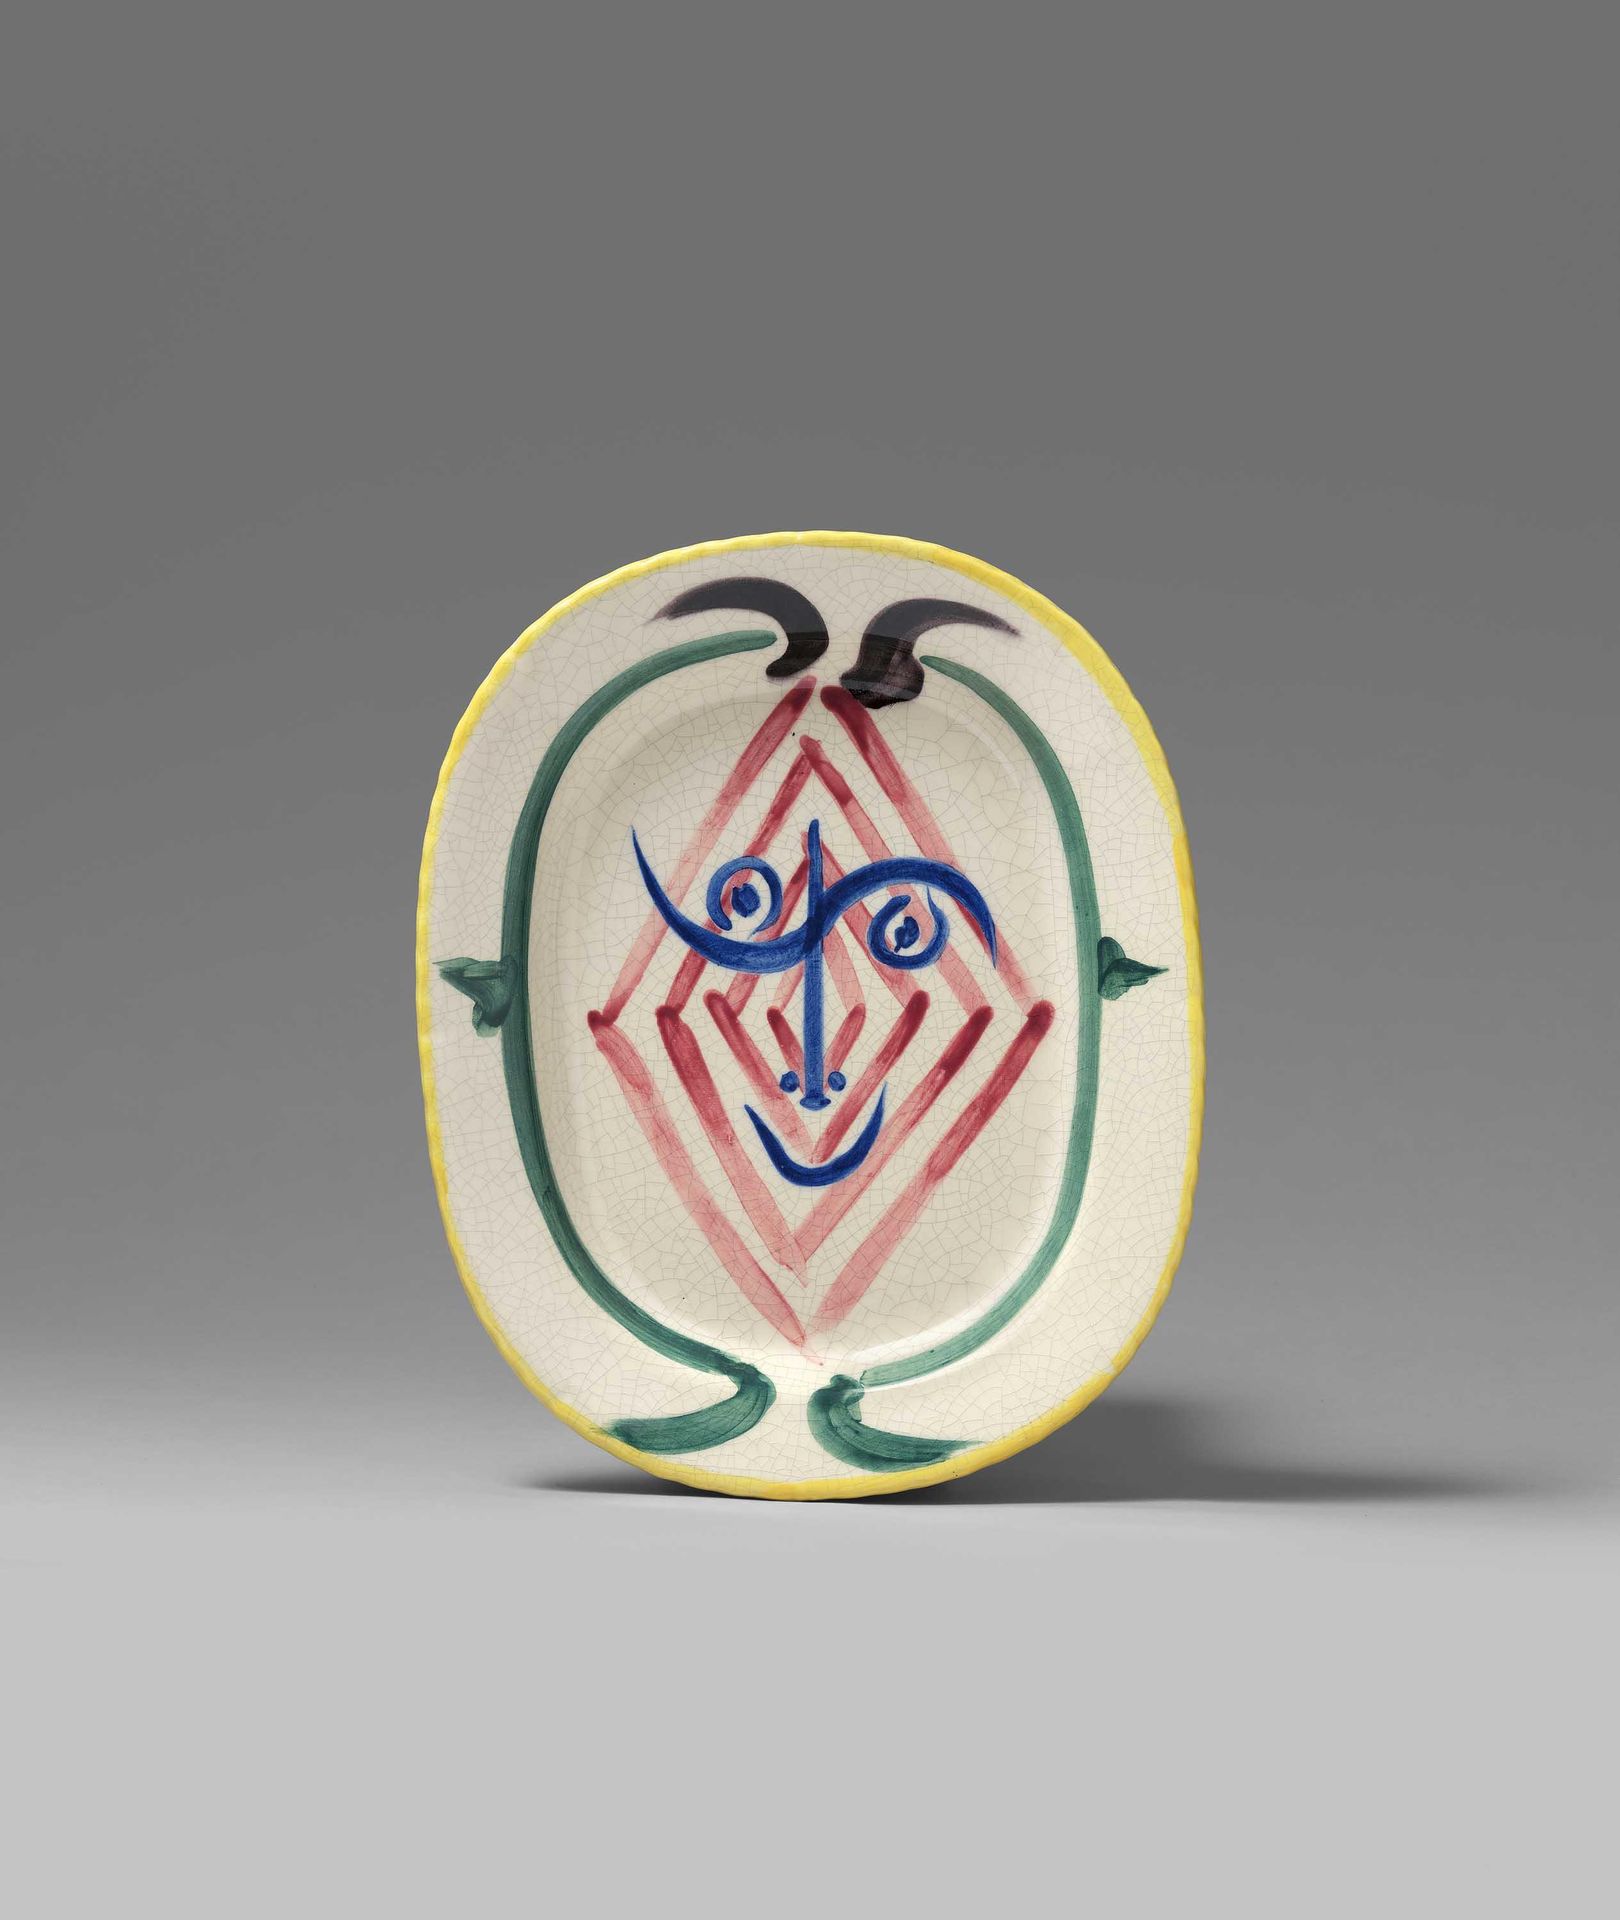 Pablo Picasso Ceramics PICASSO, PABLO KERAMIK
1881 Malaga - 1973 Mougins

Titel:&hellip;